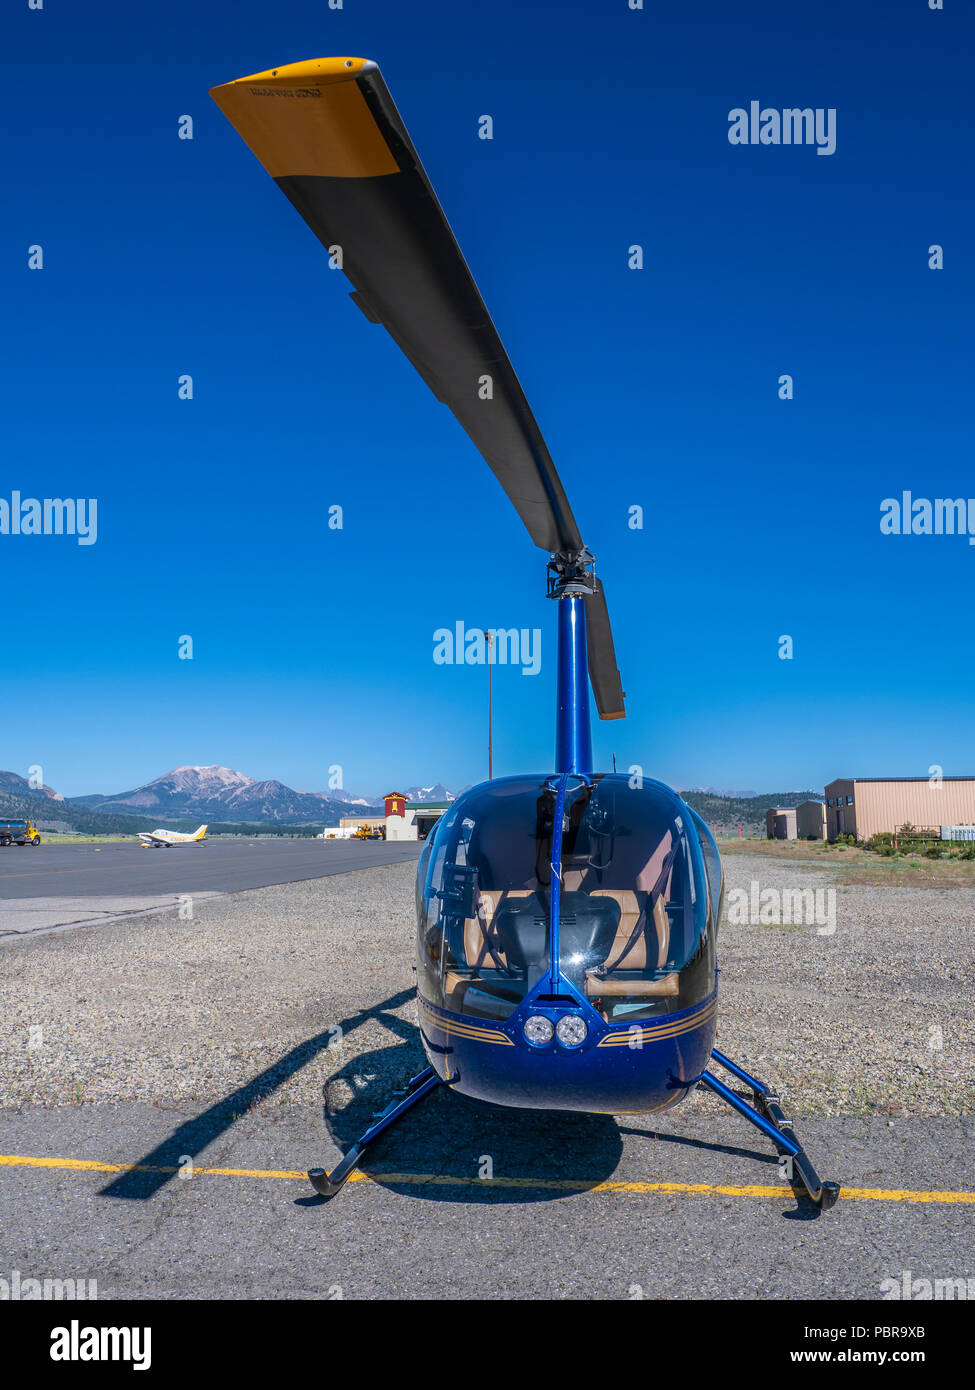 Helicóptero ROBINSON R44 en el aeropuerto Mammoth-Yosemite, Mammoth Lakes, California. Foto de stock